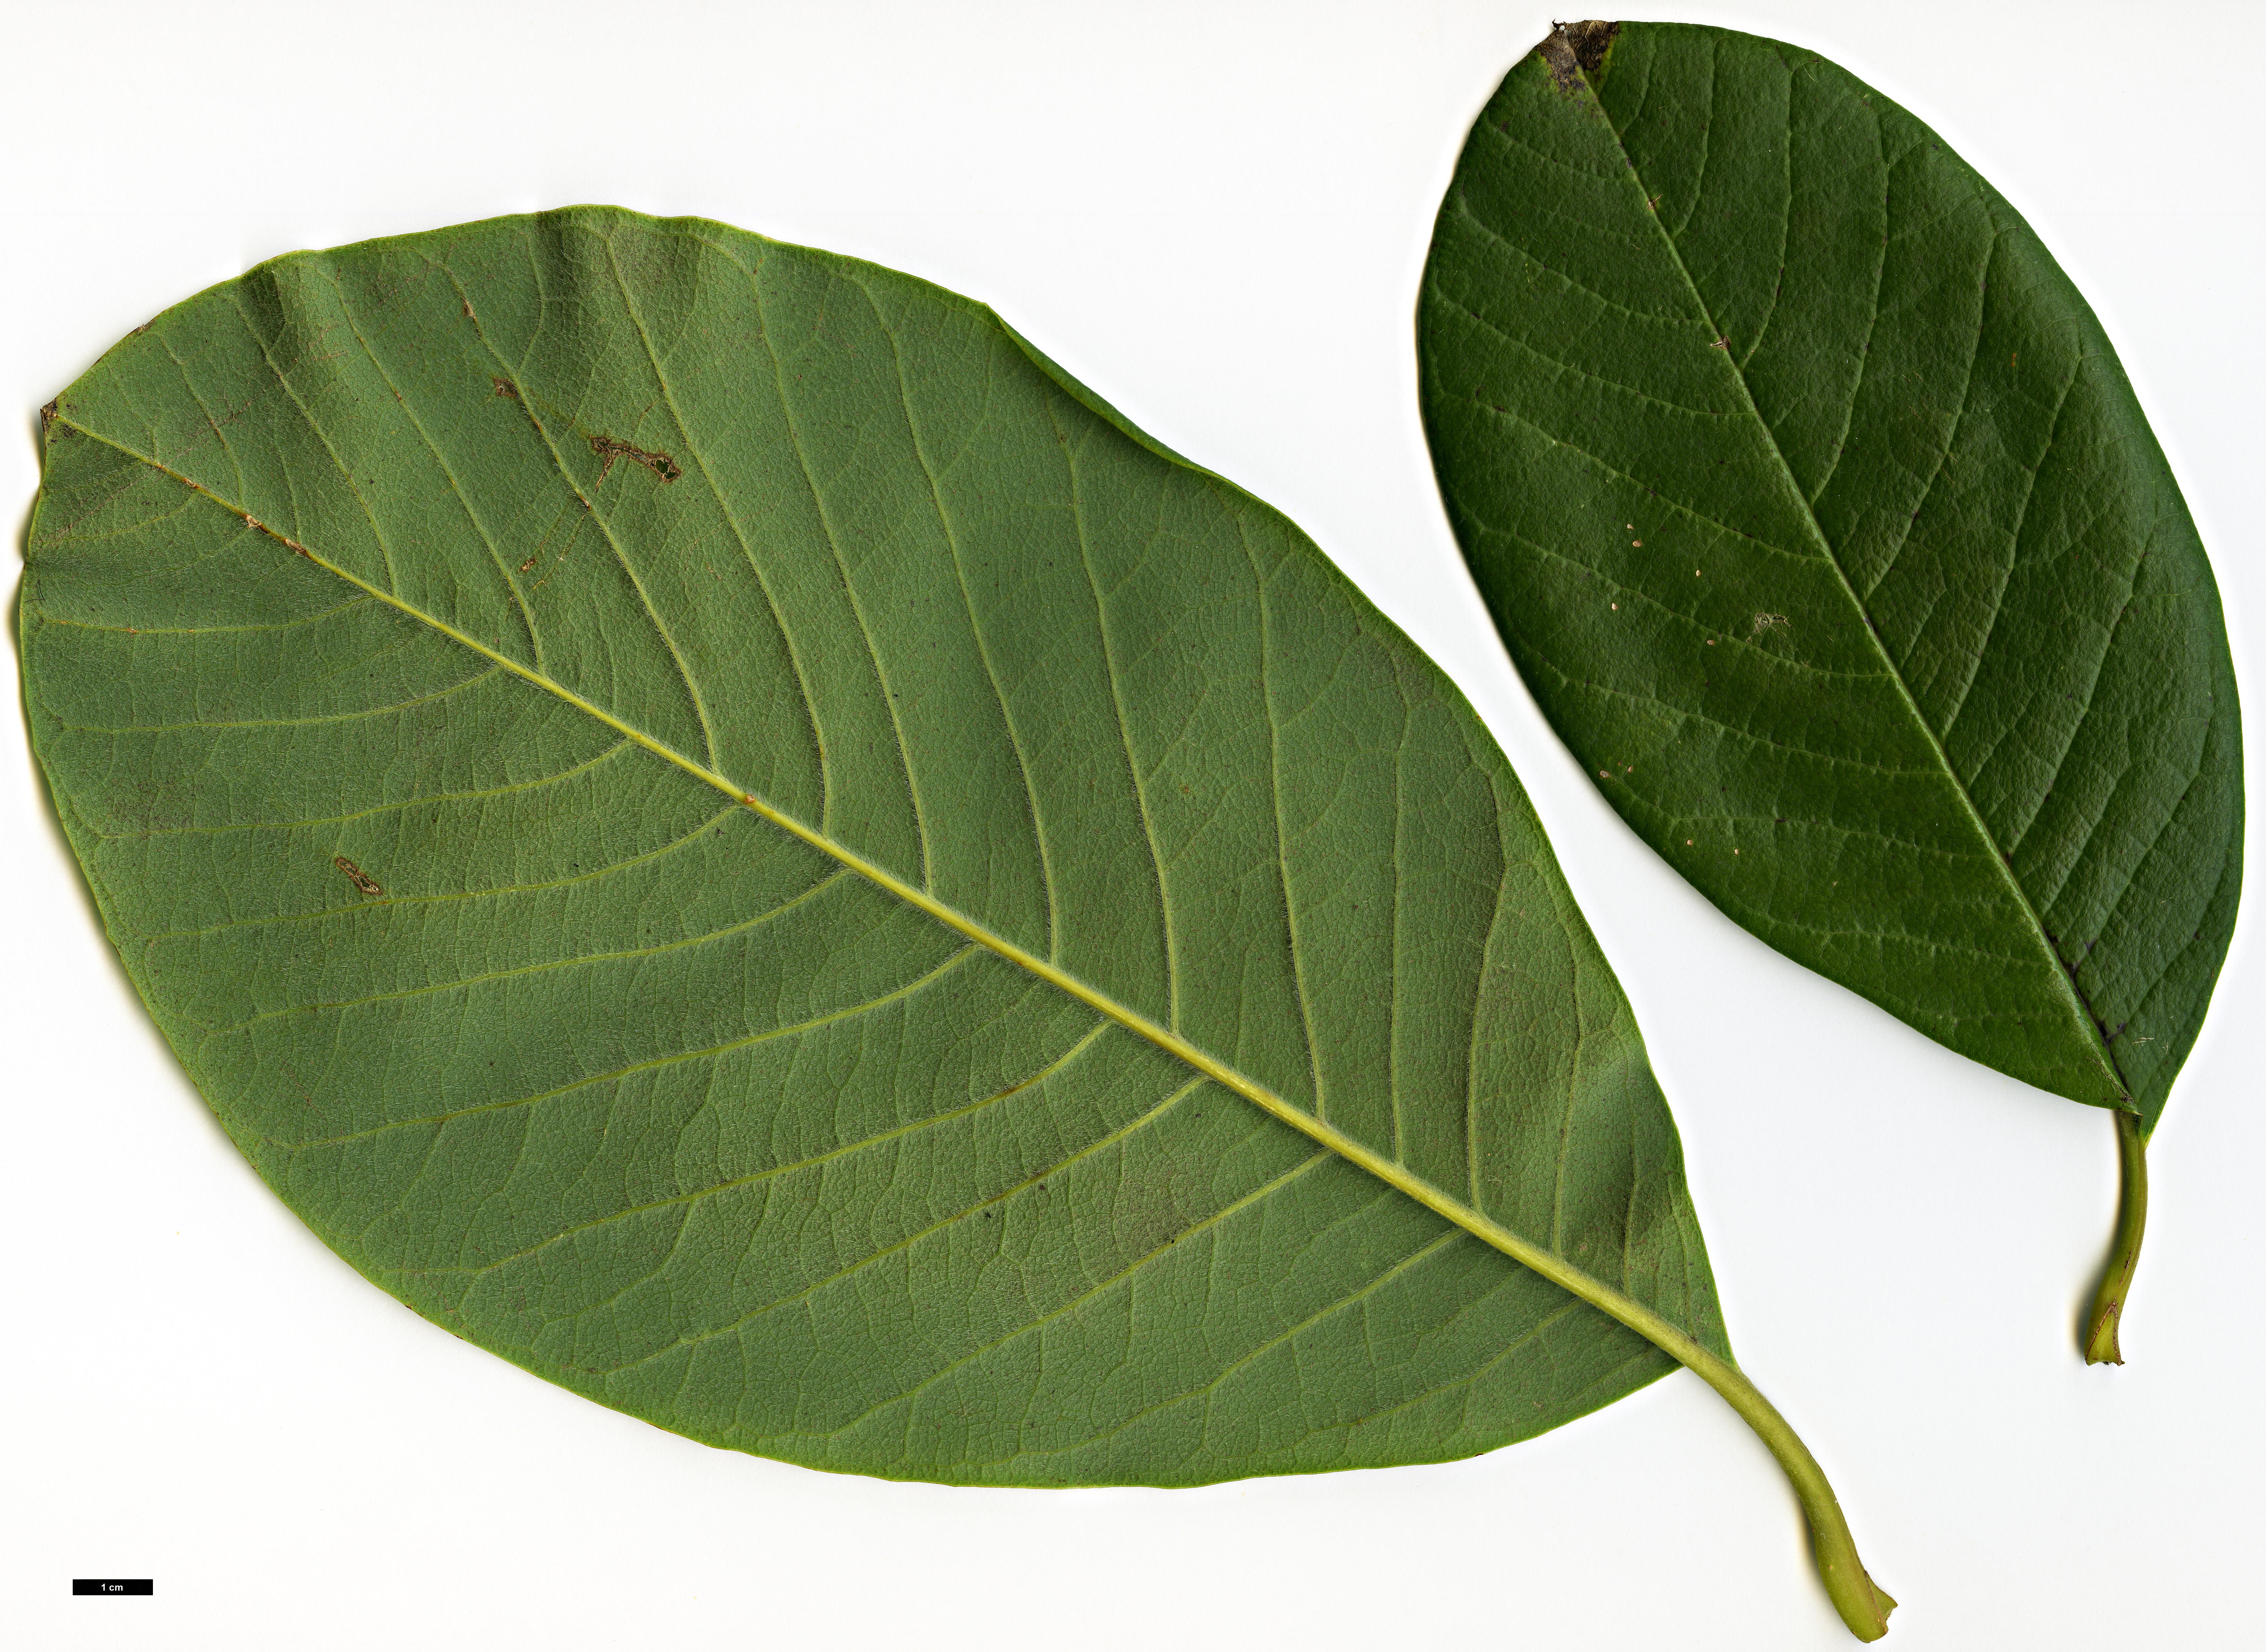 High resolution image: Family: Magnoliaceae - Genus: Magnolia - Taxon: sargentiana - SpeciesSub: var. robusta